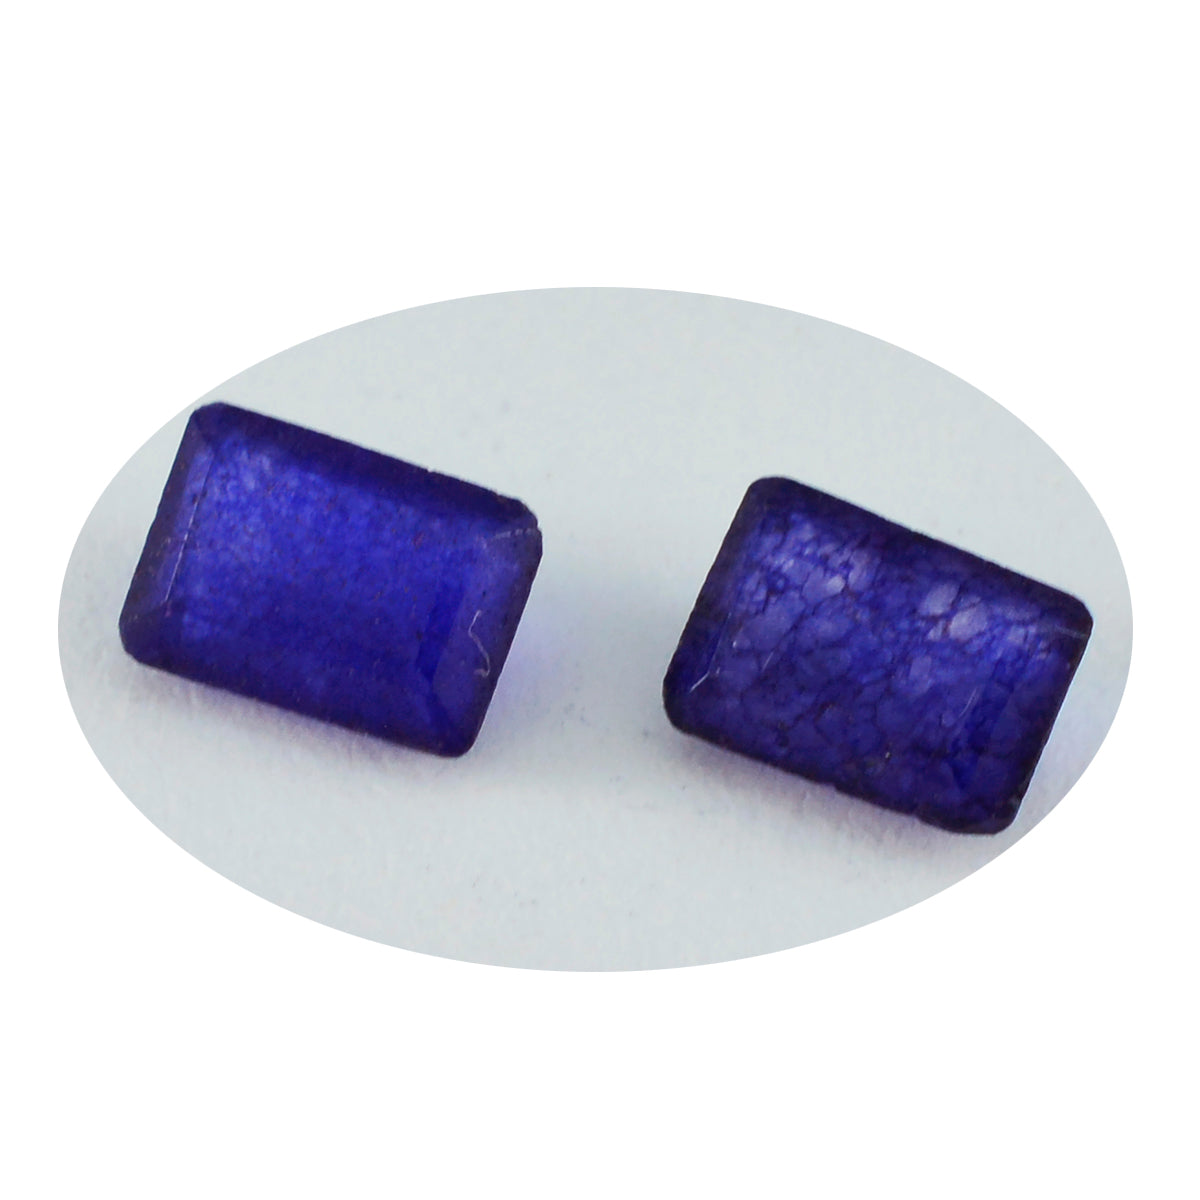 Riyogems 1pc véritable jaspe bleu à facettes 6x8mm forme octogonale belle qualité pierre précieuse en vrac